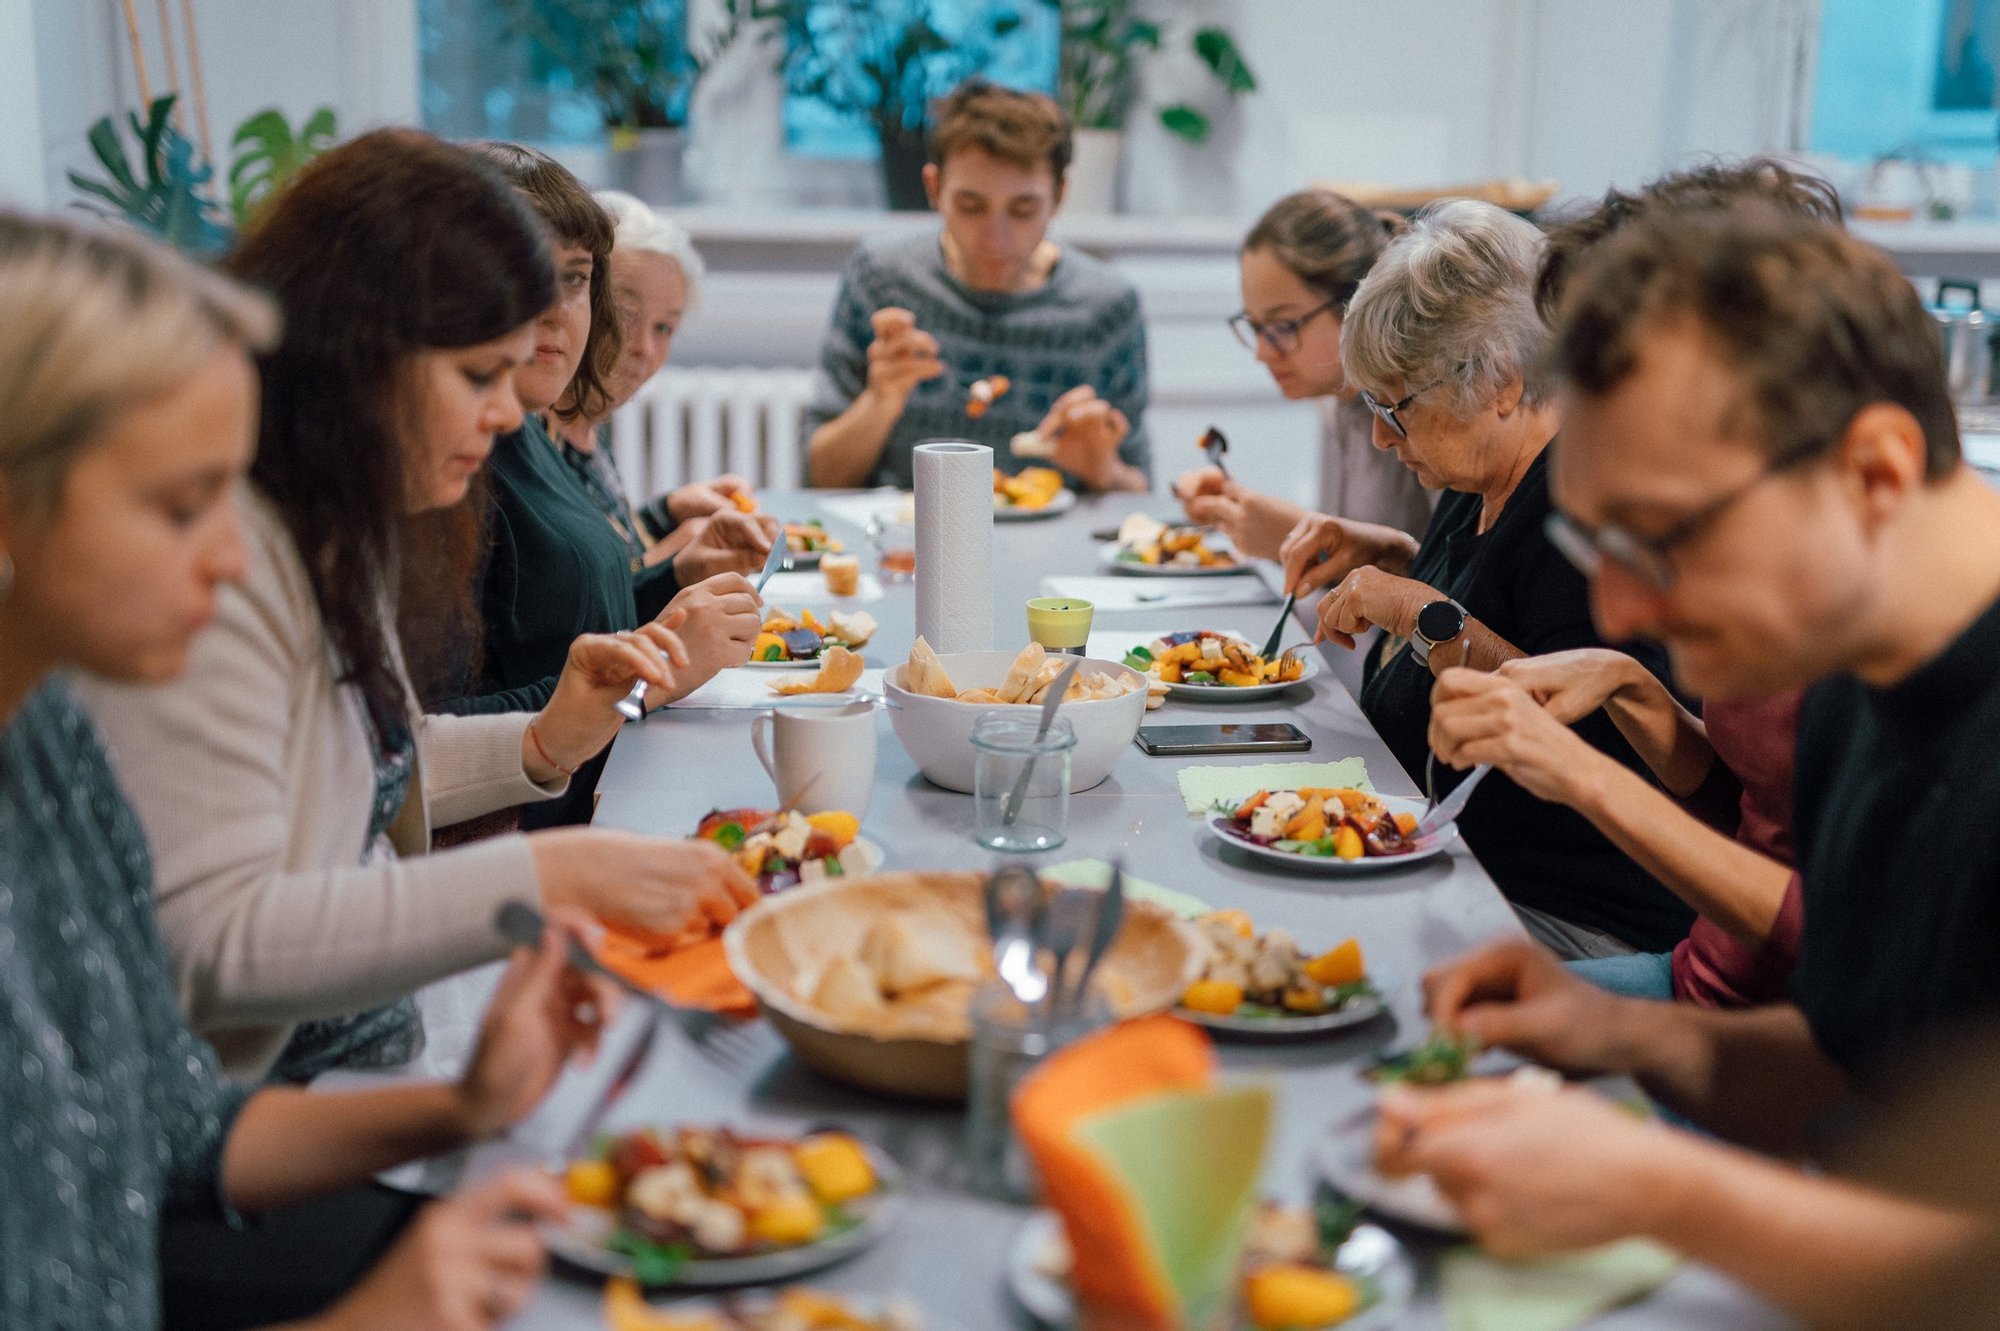 Grupa osób w różnym wieku siedzi przy długim stole zastawionym jedzeniem. To uczestnicy i uczestniczki warsztatów kulinarnych wspólnie jedzący to, co przygotowali podczas spotkania.